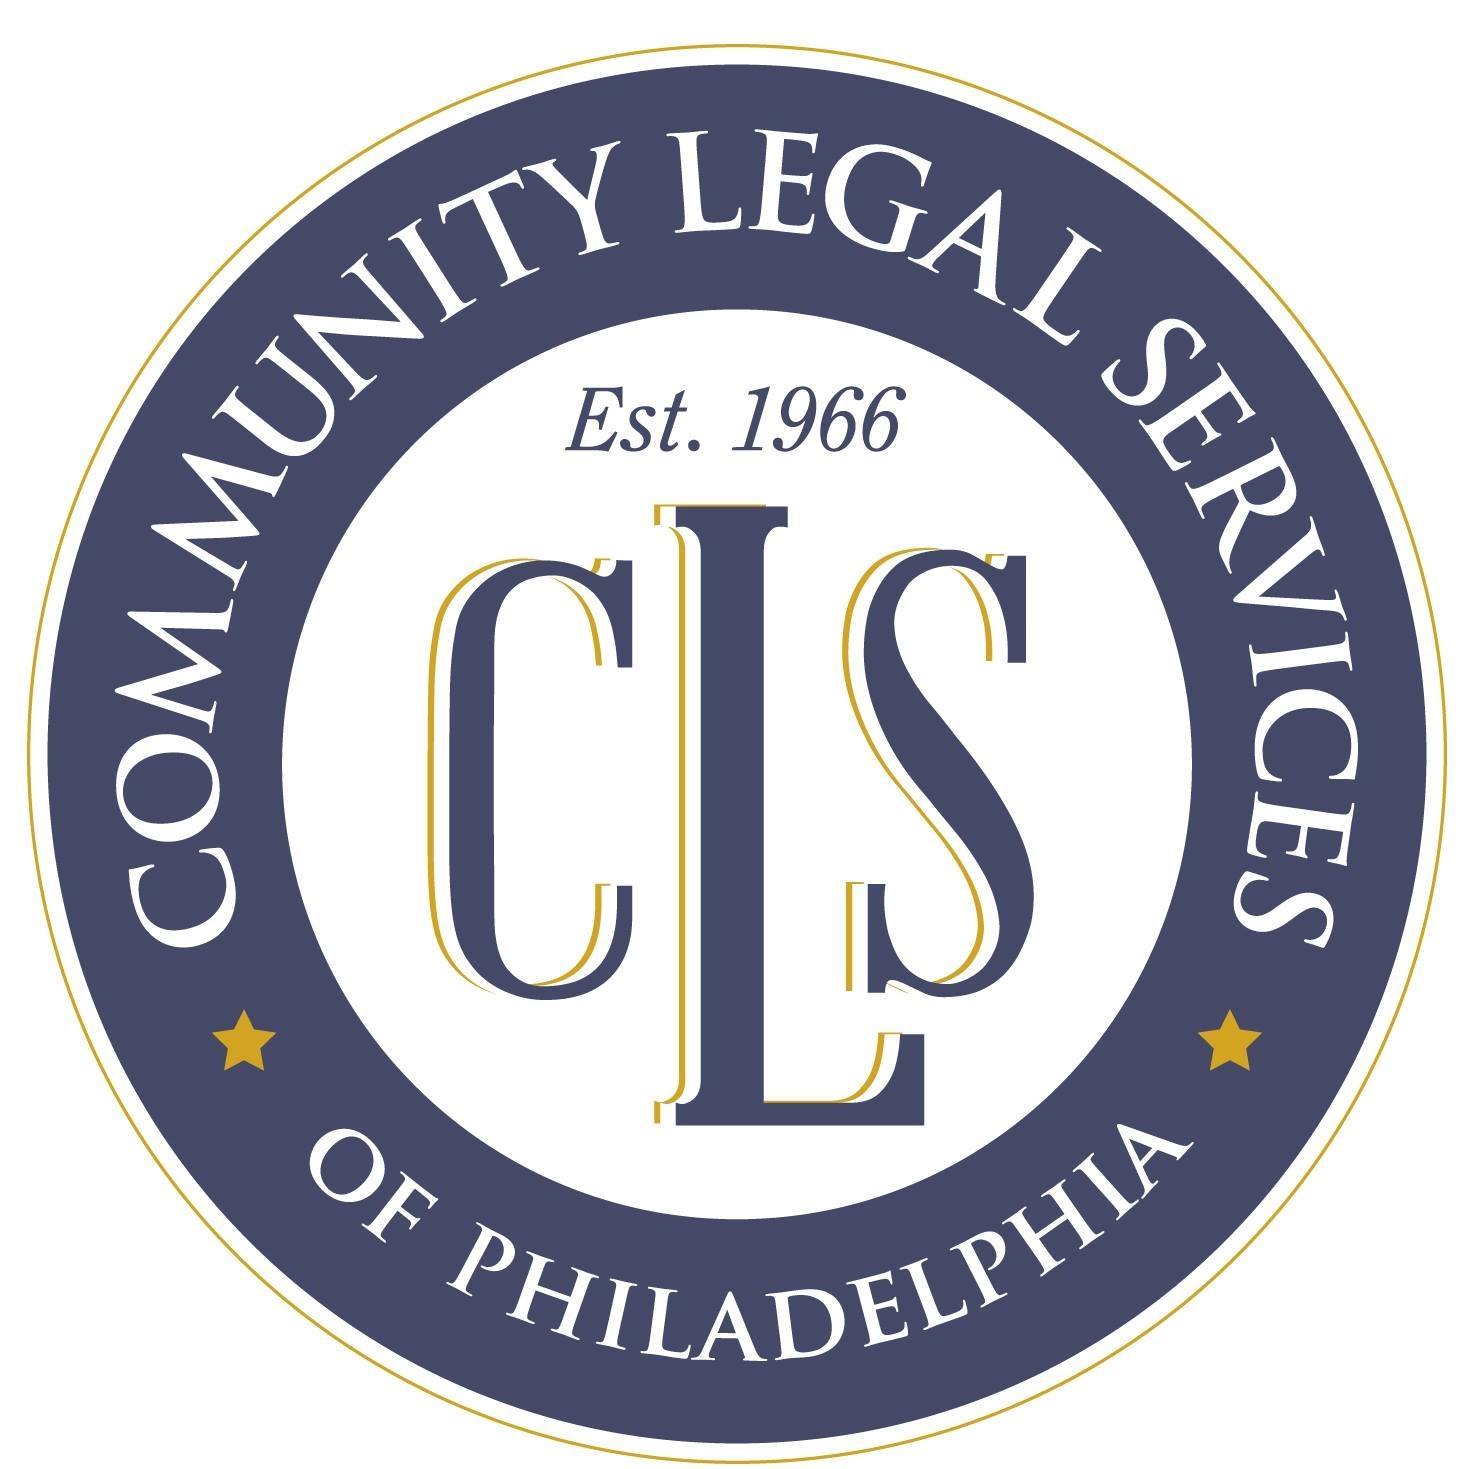 Community Legal Services - Center City 